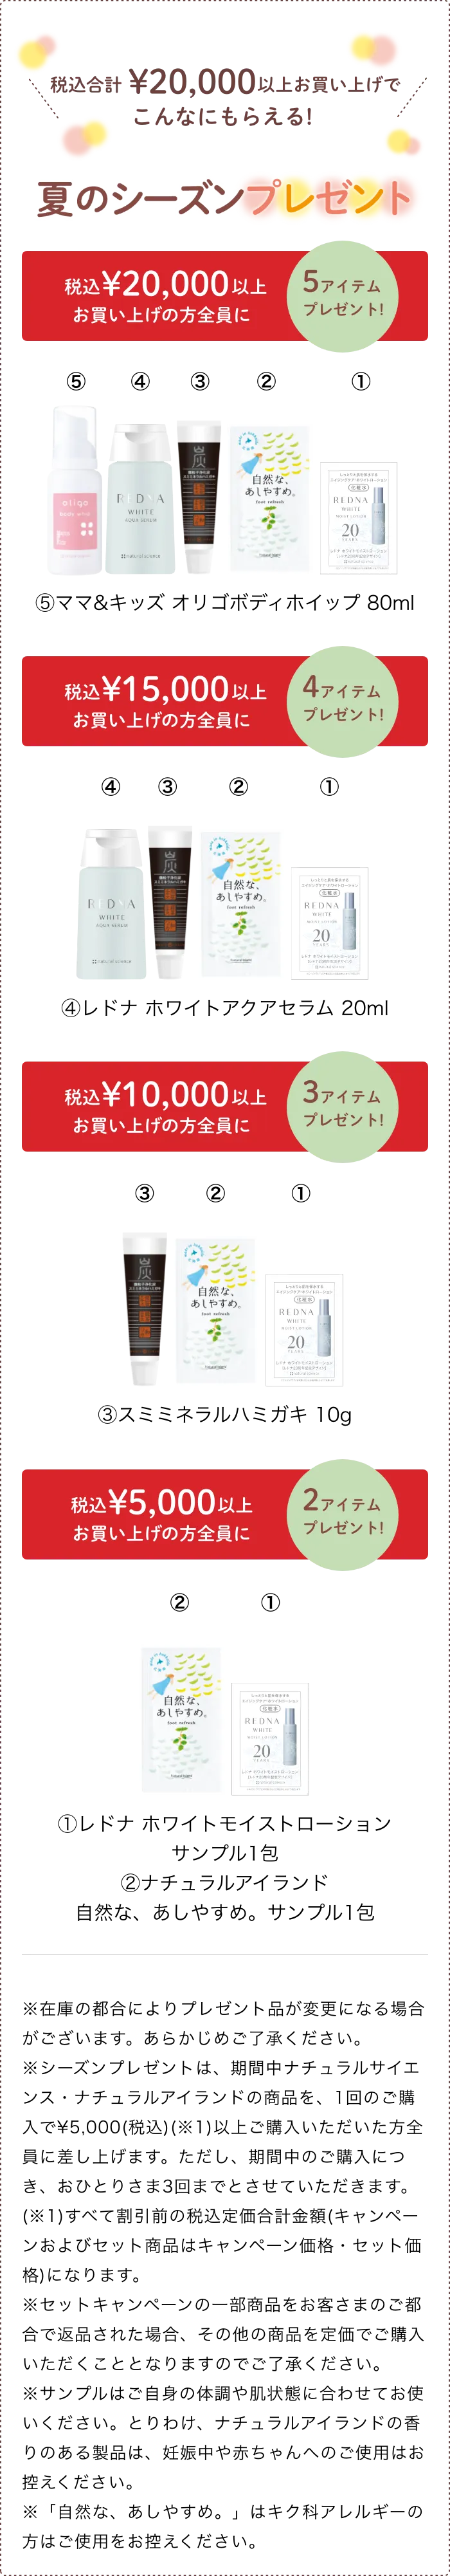 ¥20,000(税込)以上の購入で 5商品を全員にプレゼント!